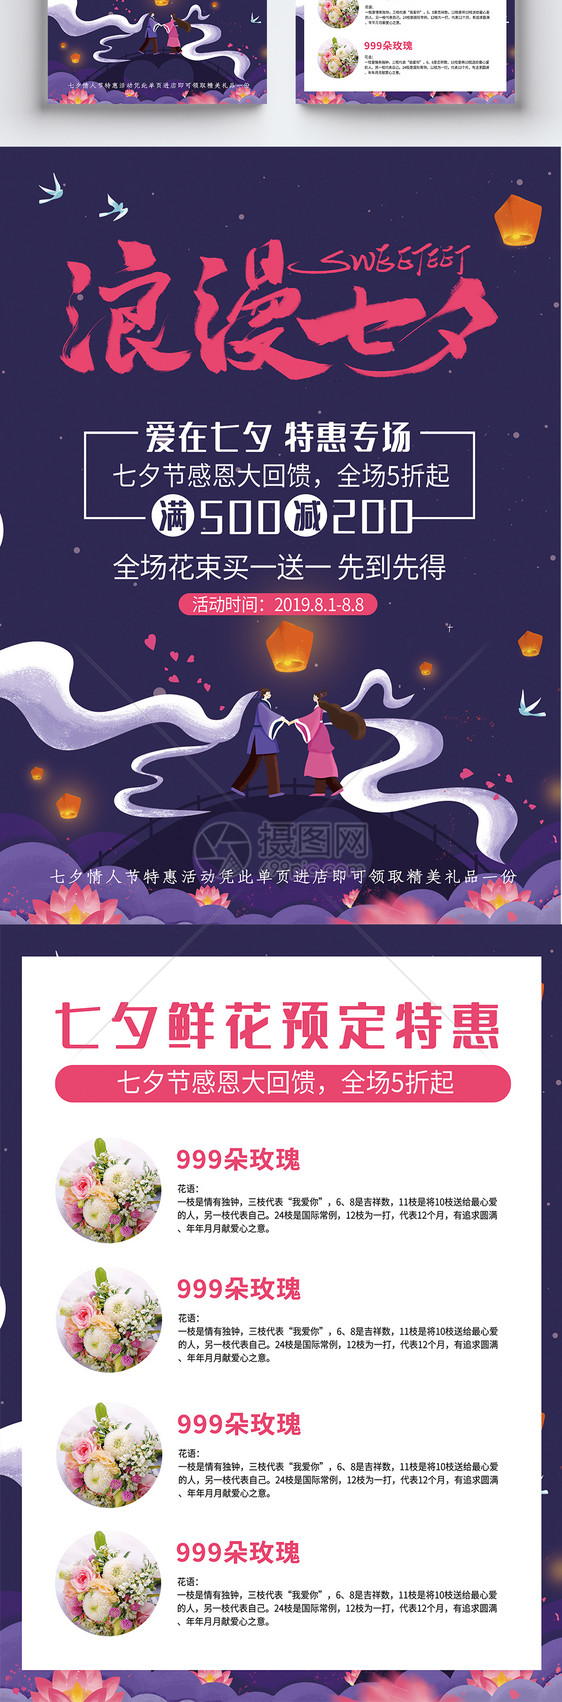 紫色浪漫七夕情人节鲜花促销传单图片